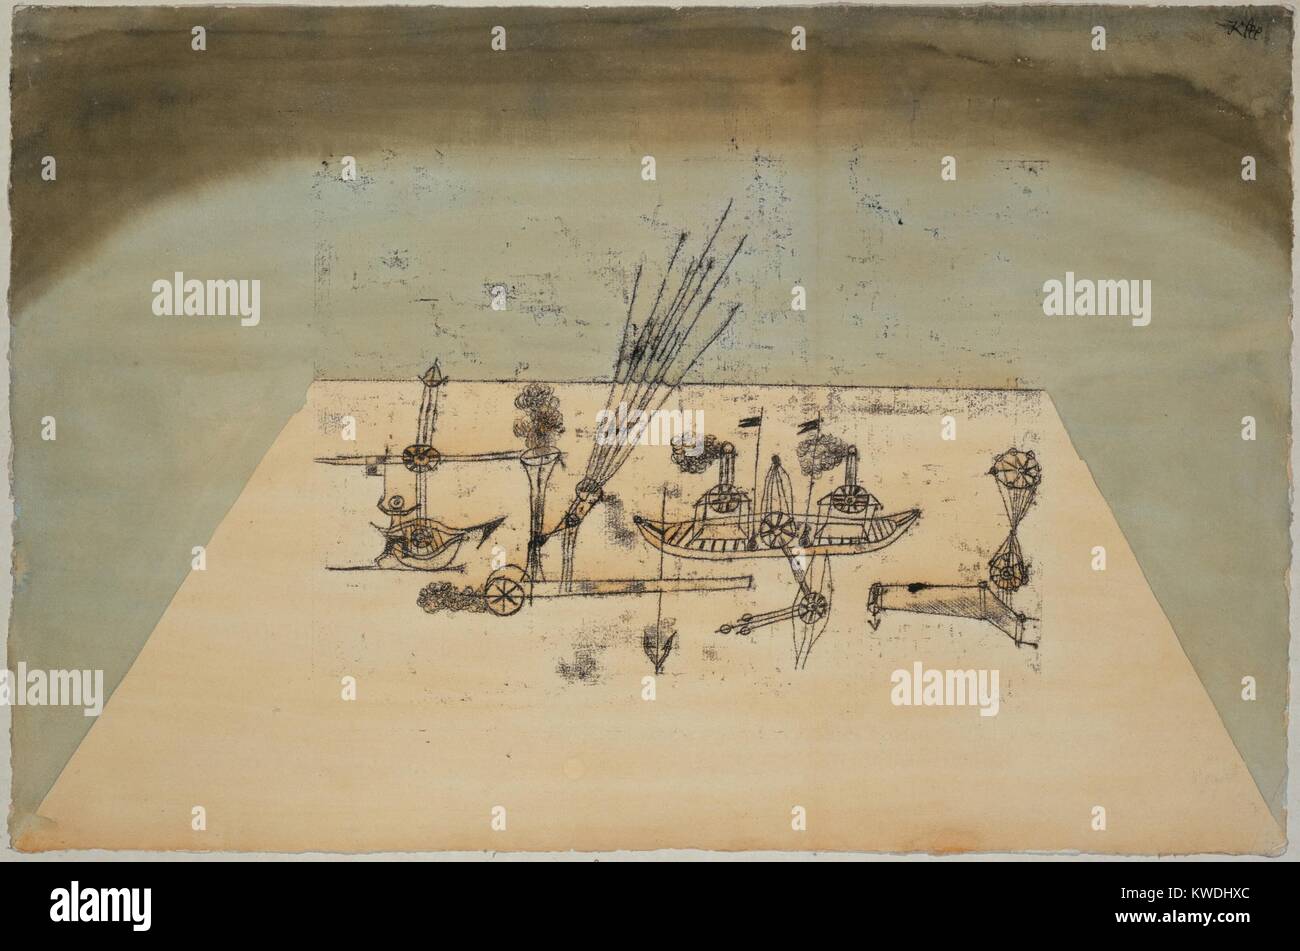 Puerto amarillo, de Paul Klee, 1921, Swiss dibujo, acuarela y tinta sobre papel. Una forma trapezoidal sugiere un espacio rectilíneo en varias máquinas que ocupan espacio y eructo humo. Hay bípedos (figura de la izquierda BSLOC 2017 7 74) Foto de stock